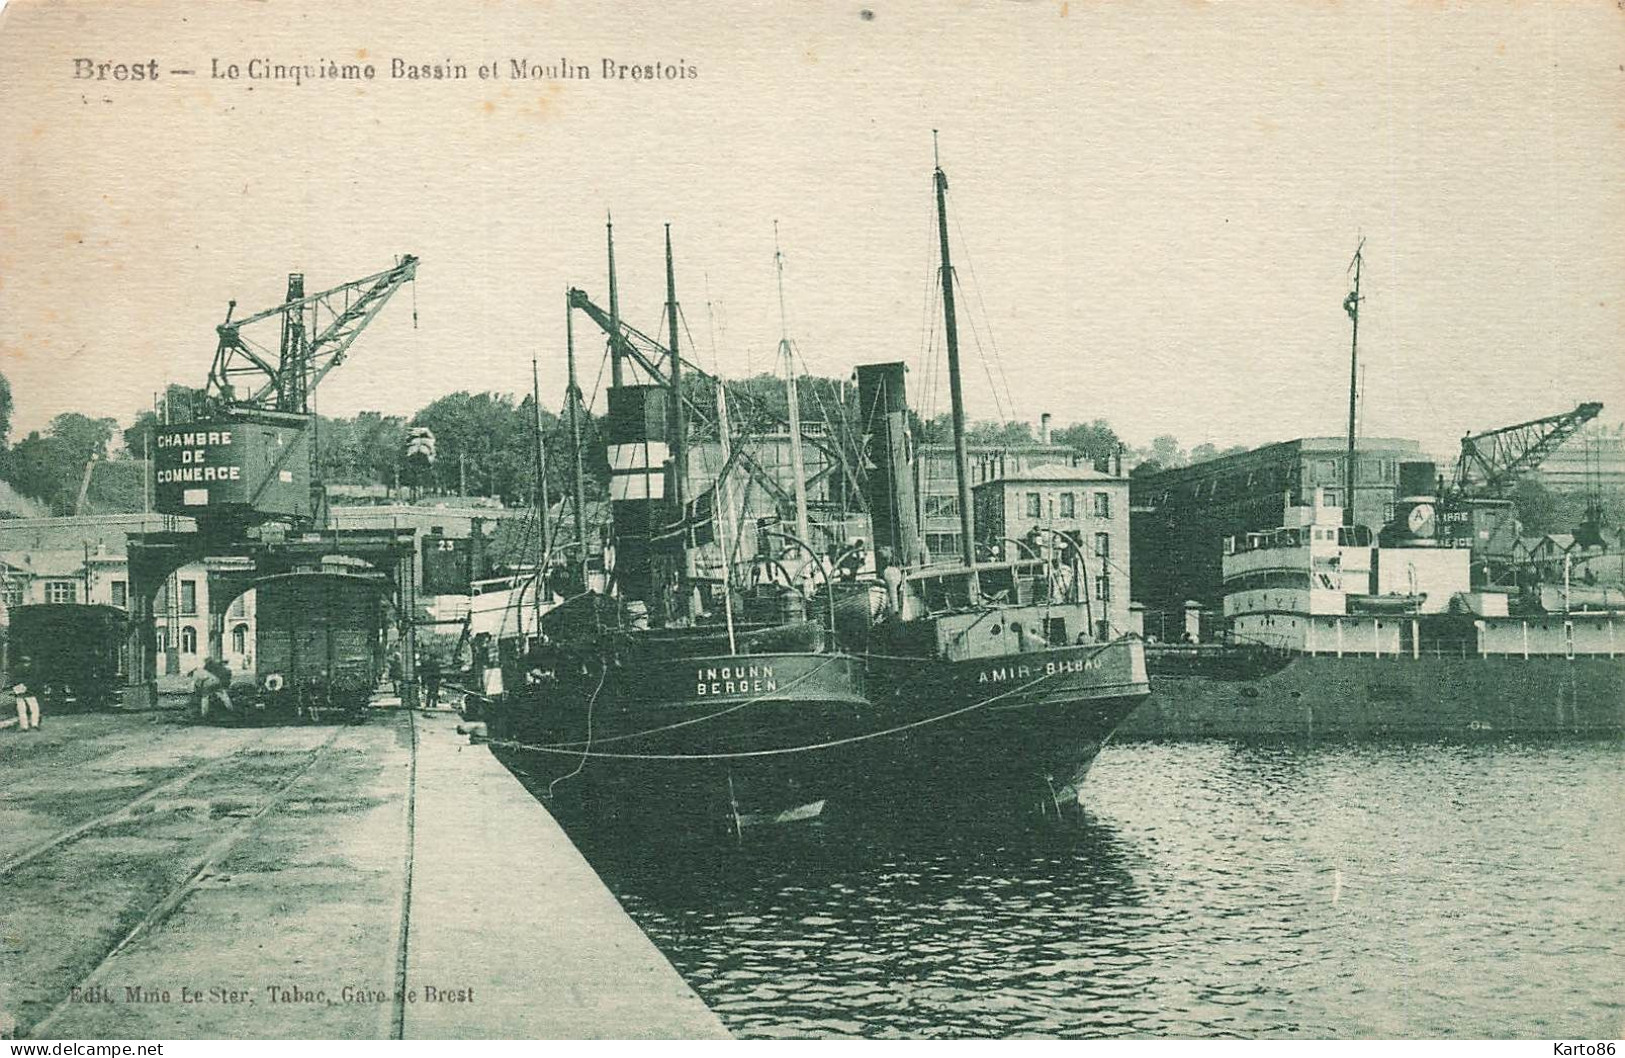 Brest * Le Cinquième Bassin Et Moulin Brestois * Bateau INGUNN ( Bergen Norge ) Et AMIR De Bilbao Espana * Grue - Brest